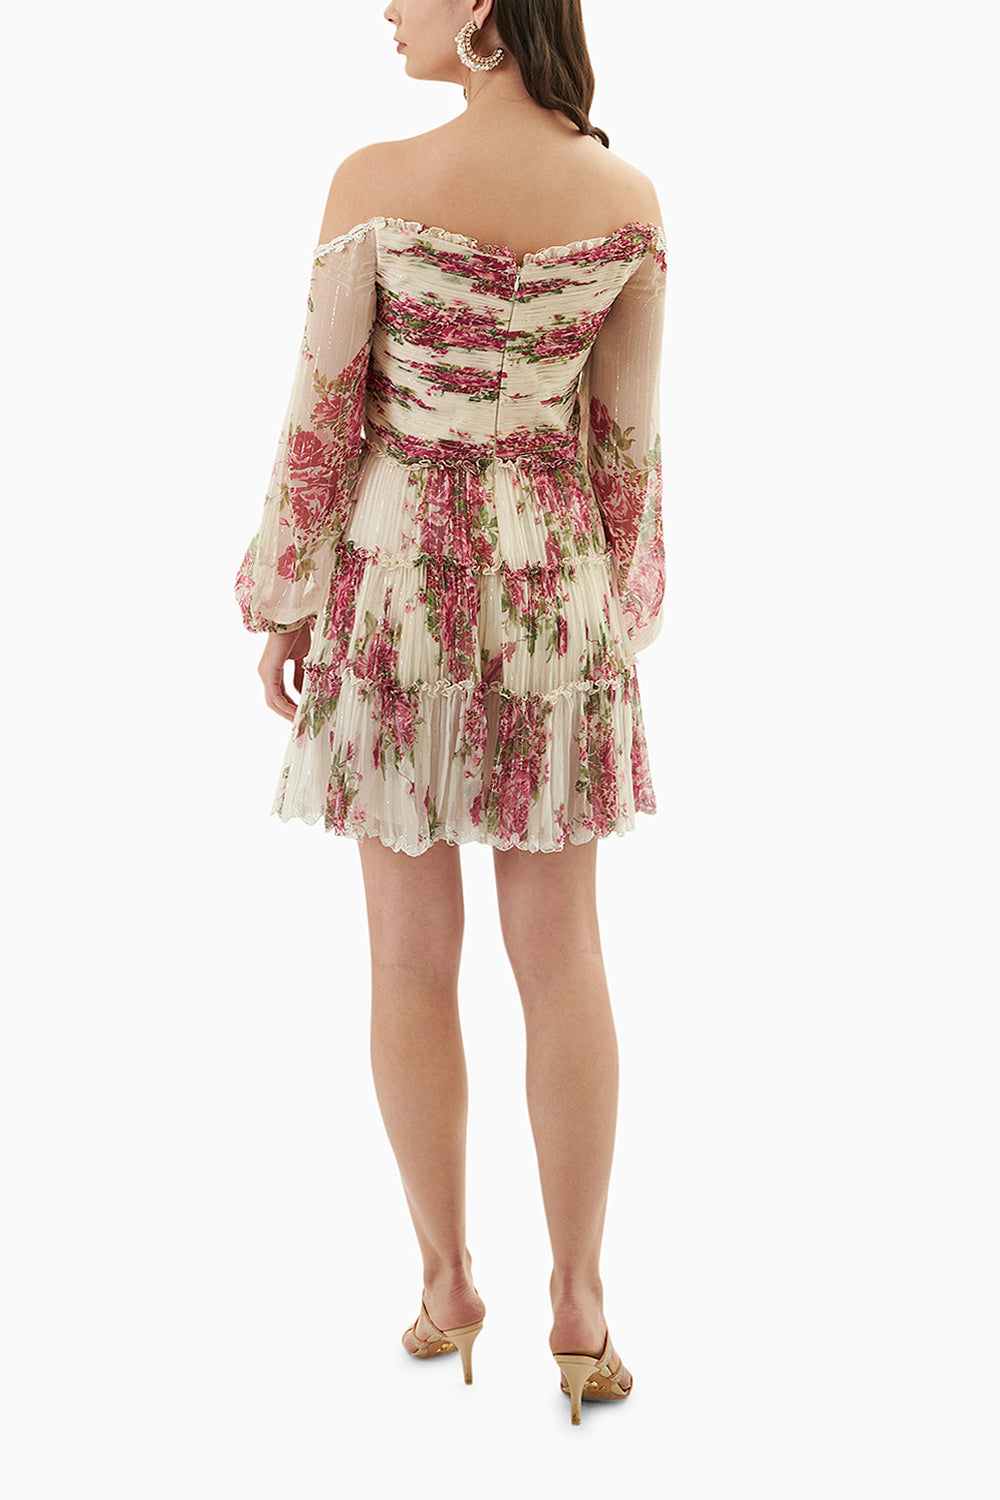 Rose Printed Off-Shoulder Short Dress